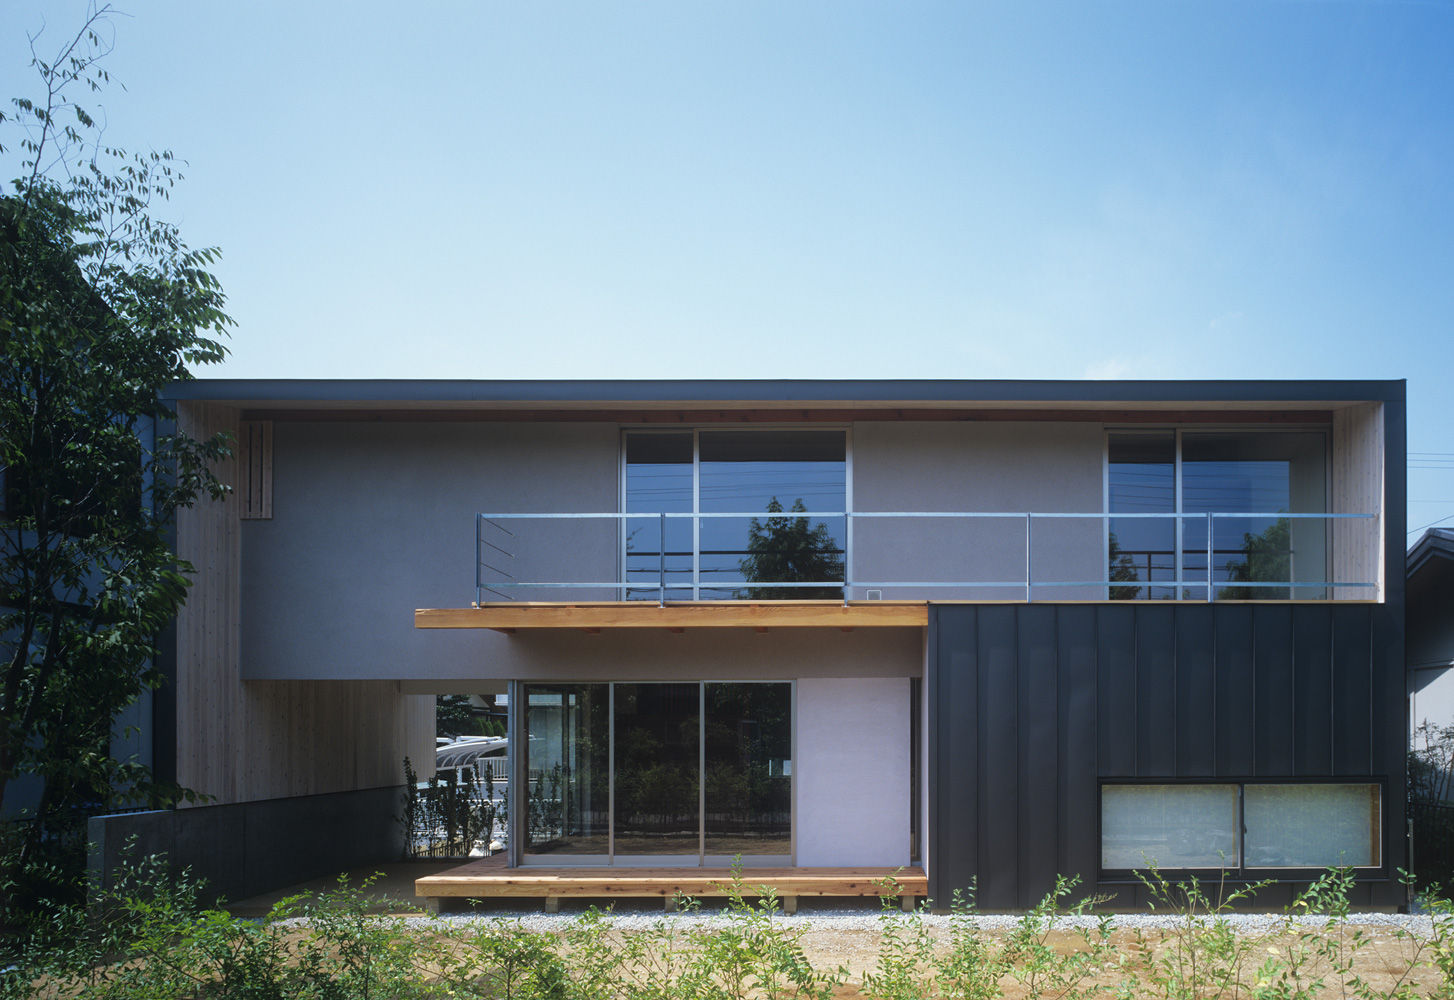 南庭の家 / House in Kobe, 杉山圭一建築設計事務所 杉山圭一建築設計事務所 木造住宅